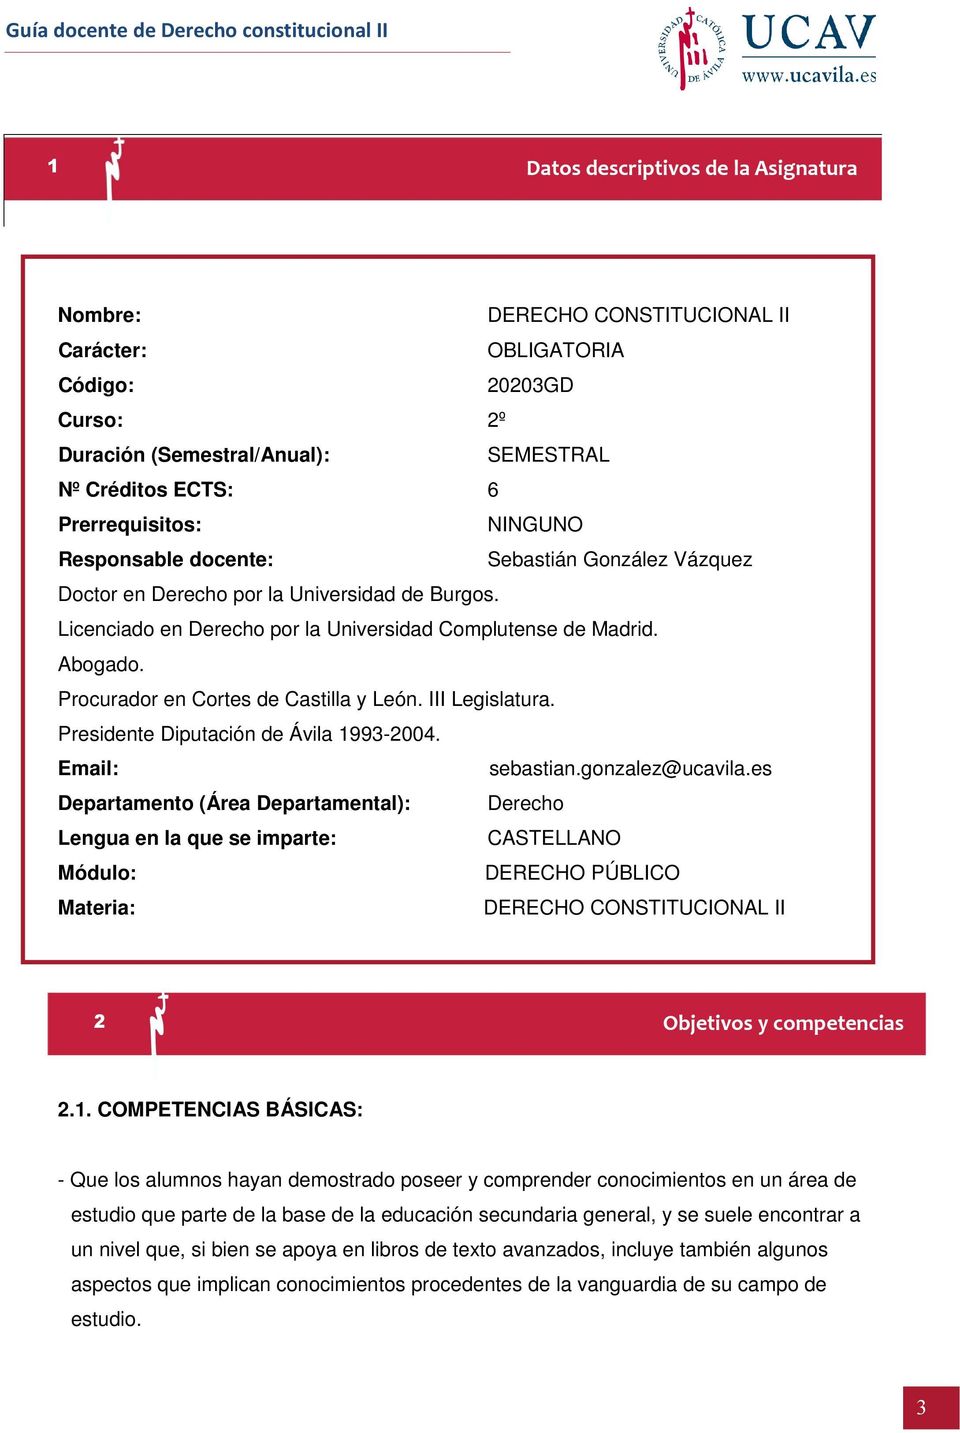 Procurador en Cortes de Castilla y León. III Legislatura. Presidente Diputación de Ávila 1993-2004. Email: sebastian.gonzalez@ucavila.